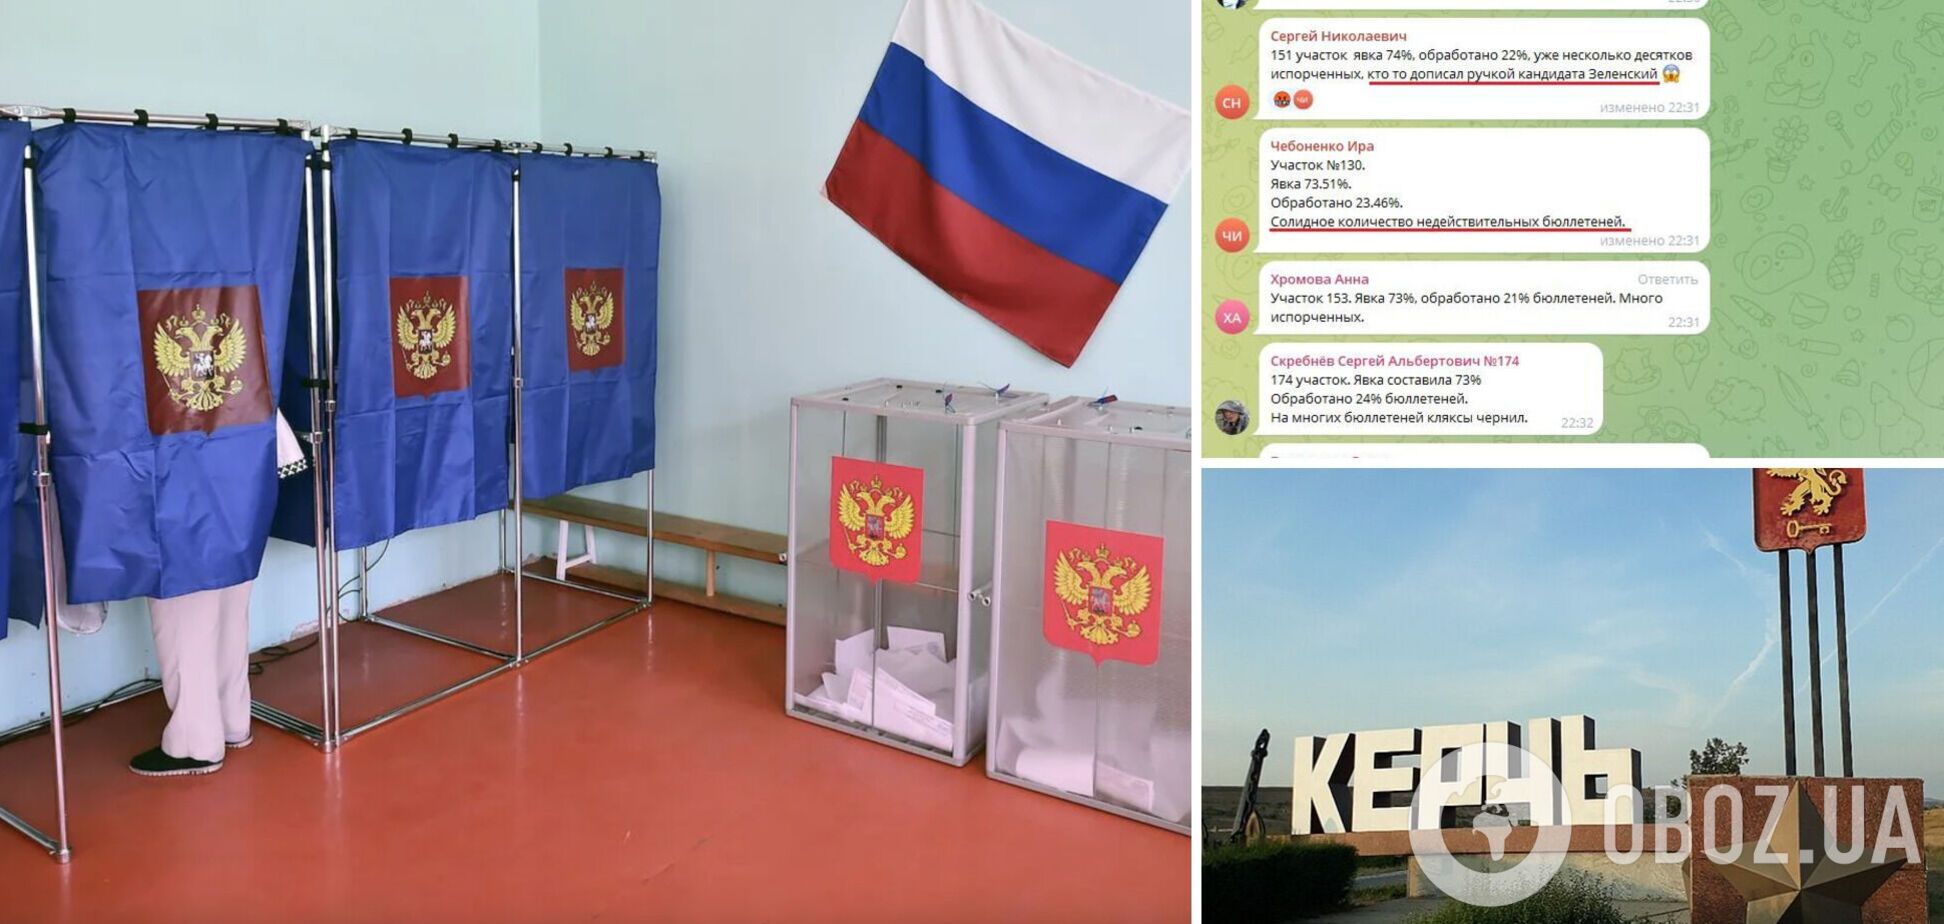 'Закреслюють кандидатуру Путіна': у чаті 'виборчкому' Керчі звітують про масове псування бюлетенів. Фото
